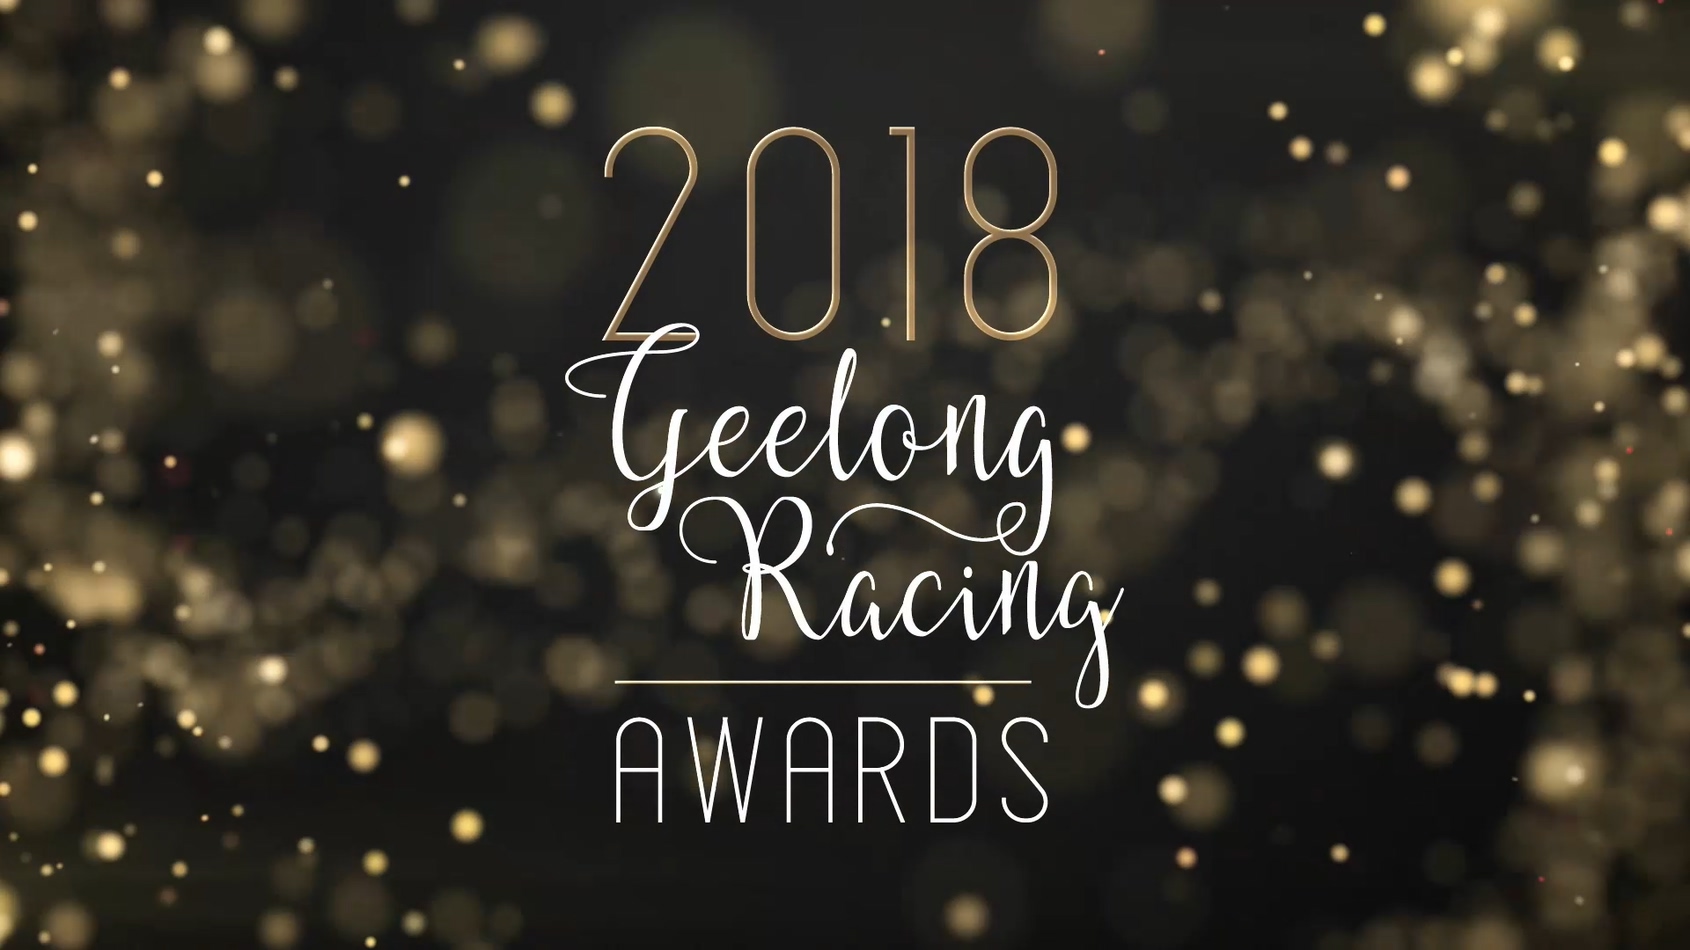 Geelong Racing Awards - A/V